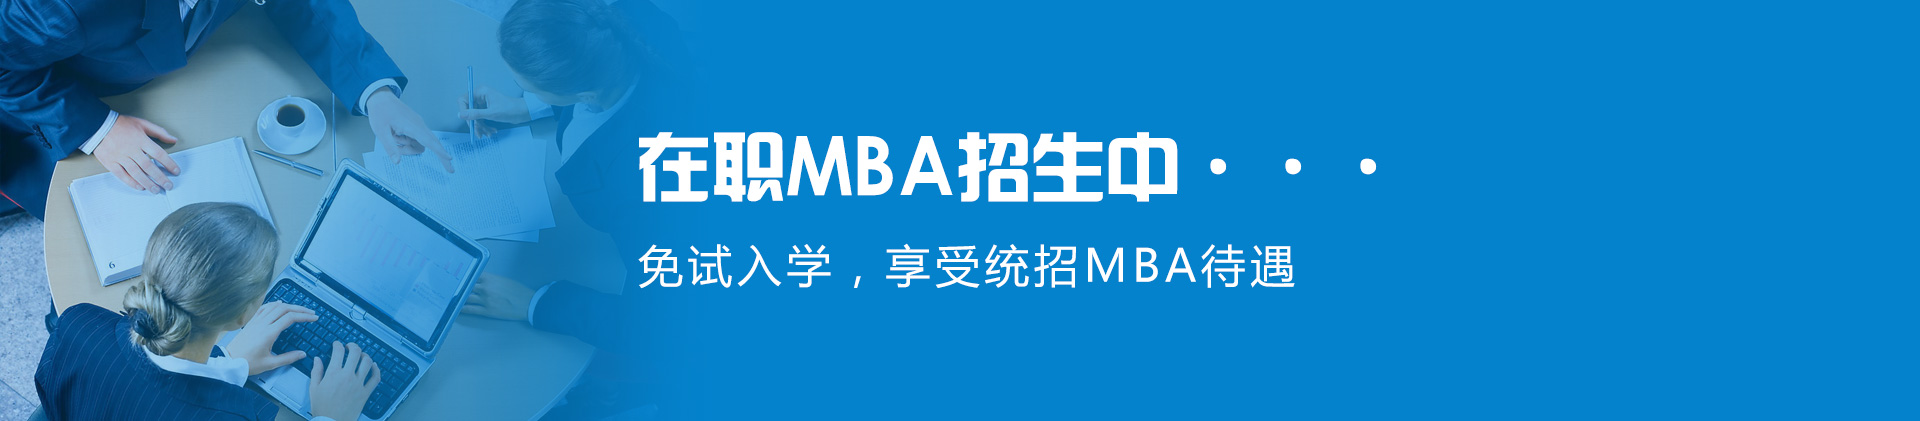 中国社科院在职MBA